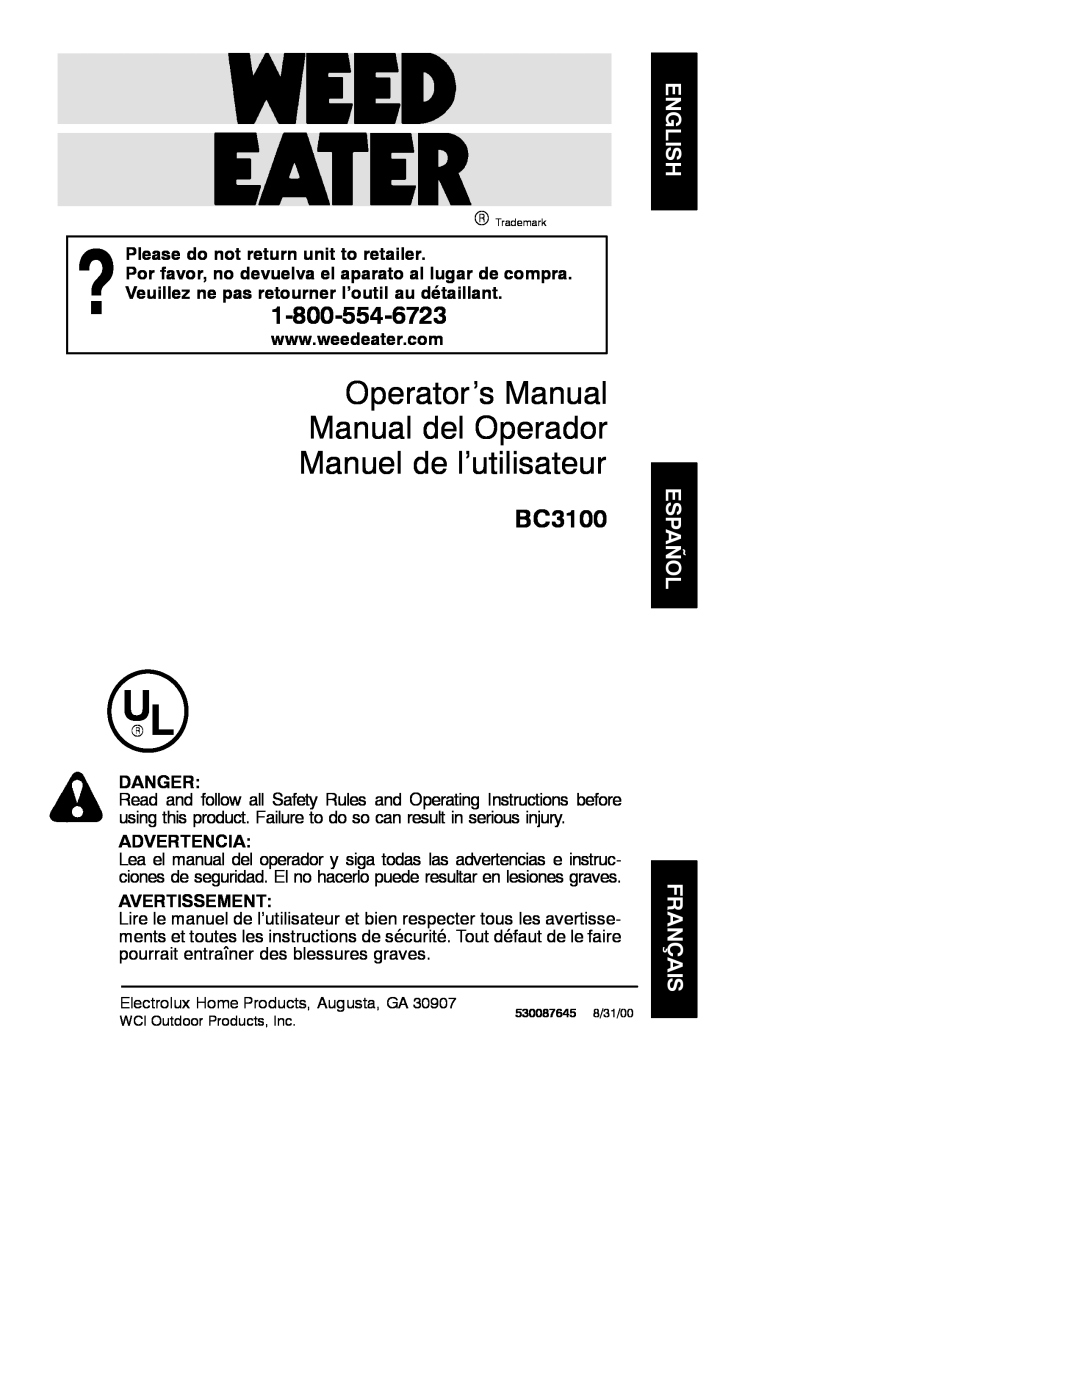 Poulan BC3100 operating instructions Operator’s Manual Manual del Operador Manuel de l’utilisateur, Danger, Advertencia 